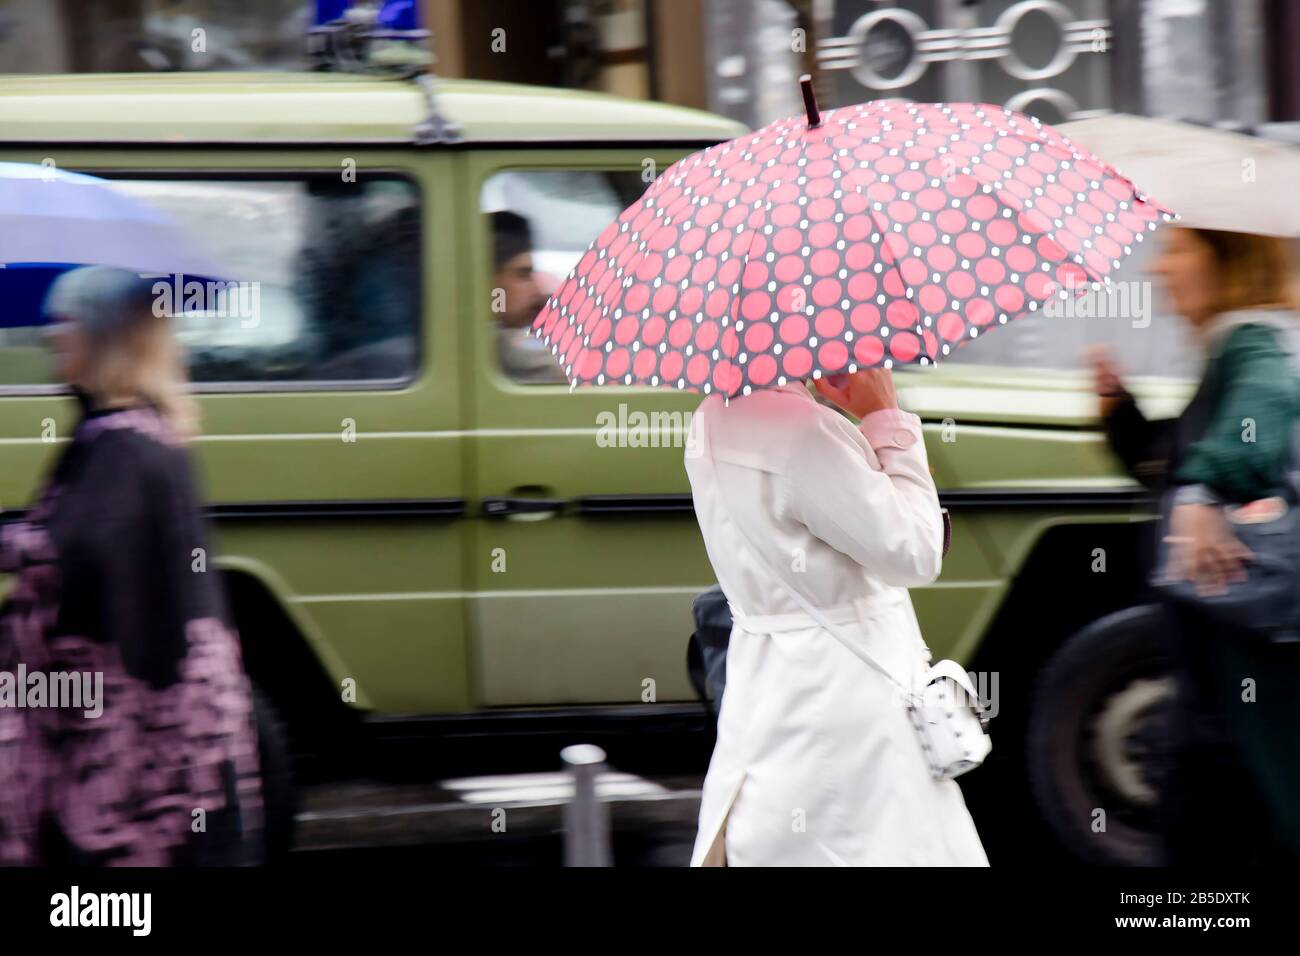 Belgrad, Serbien - 24. September 2019: Junge Frau in weißem Regenmantel, die an einem geschäftigen Tag in Bewegung unter dem Regenschirm auf einer regnerischen Stadtstraße spazieren geht Stockfoto